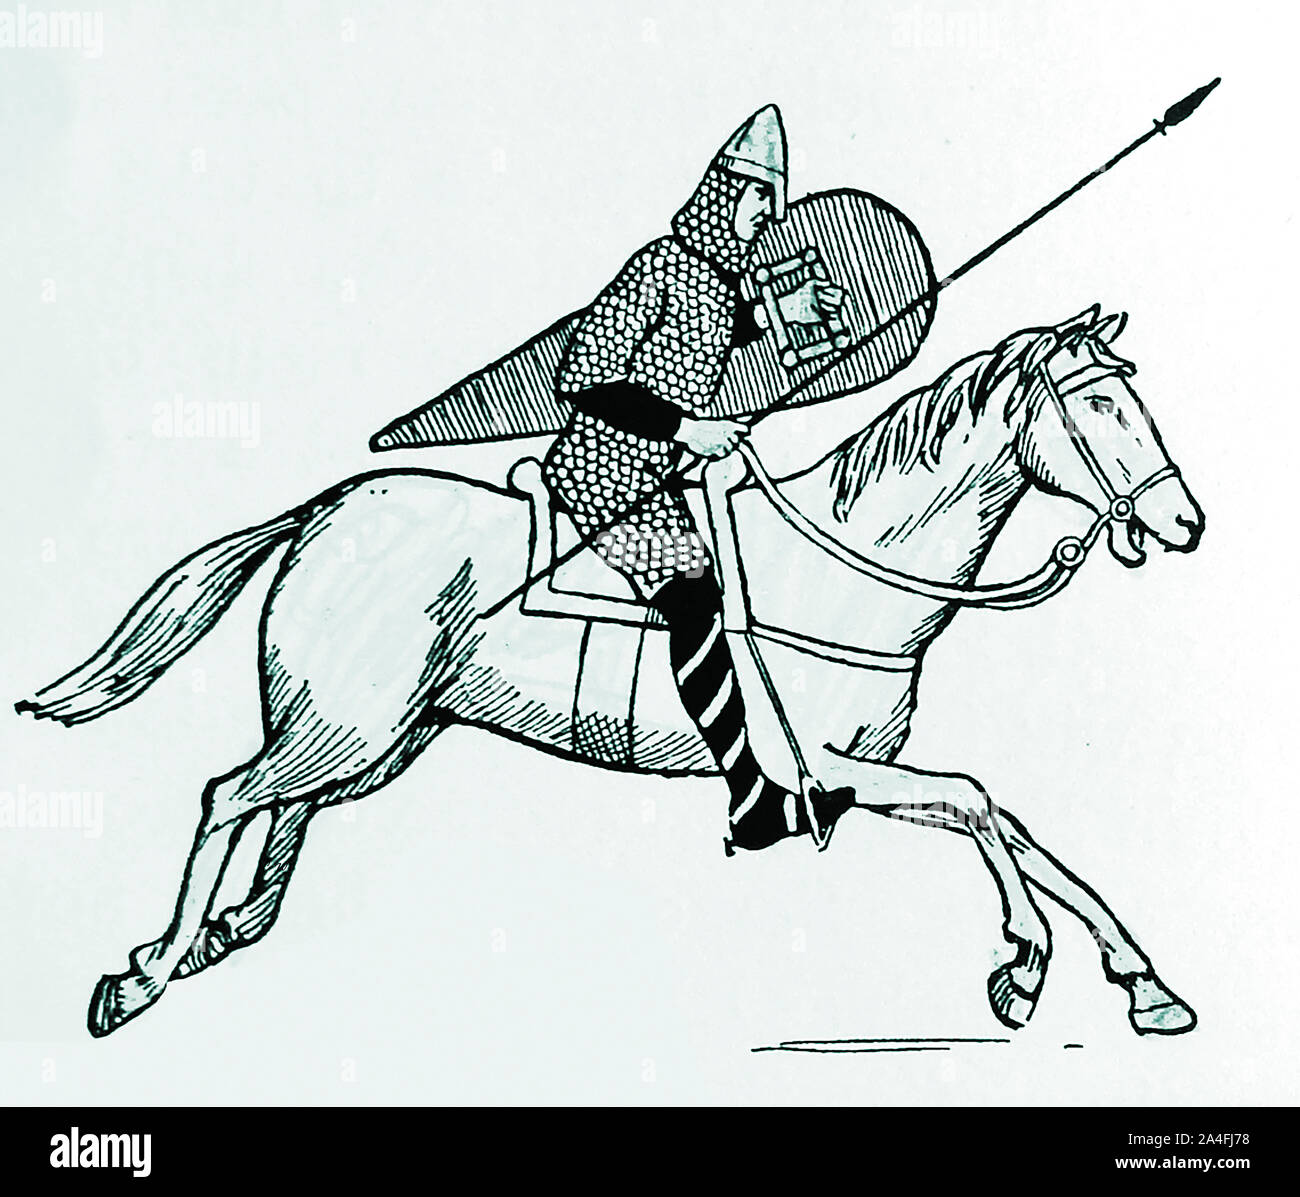 Une vieille illustration montrant un Norman horse-rider (Miles / milite) avec son bouclier, épée/lance, chaîne-mail et le casque Banque D'Images